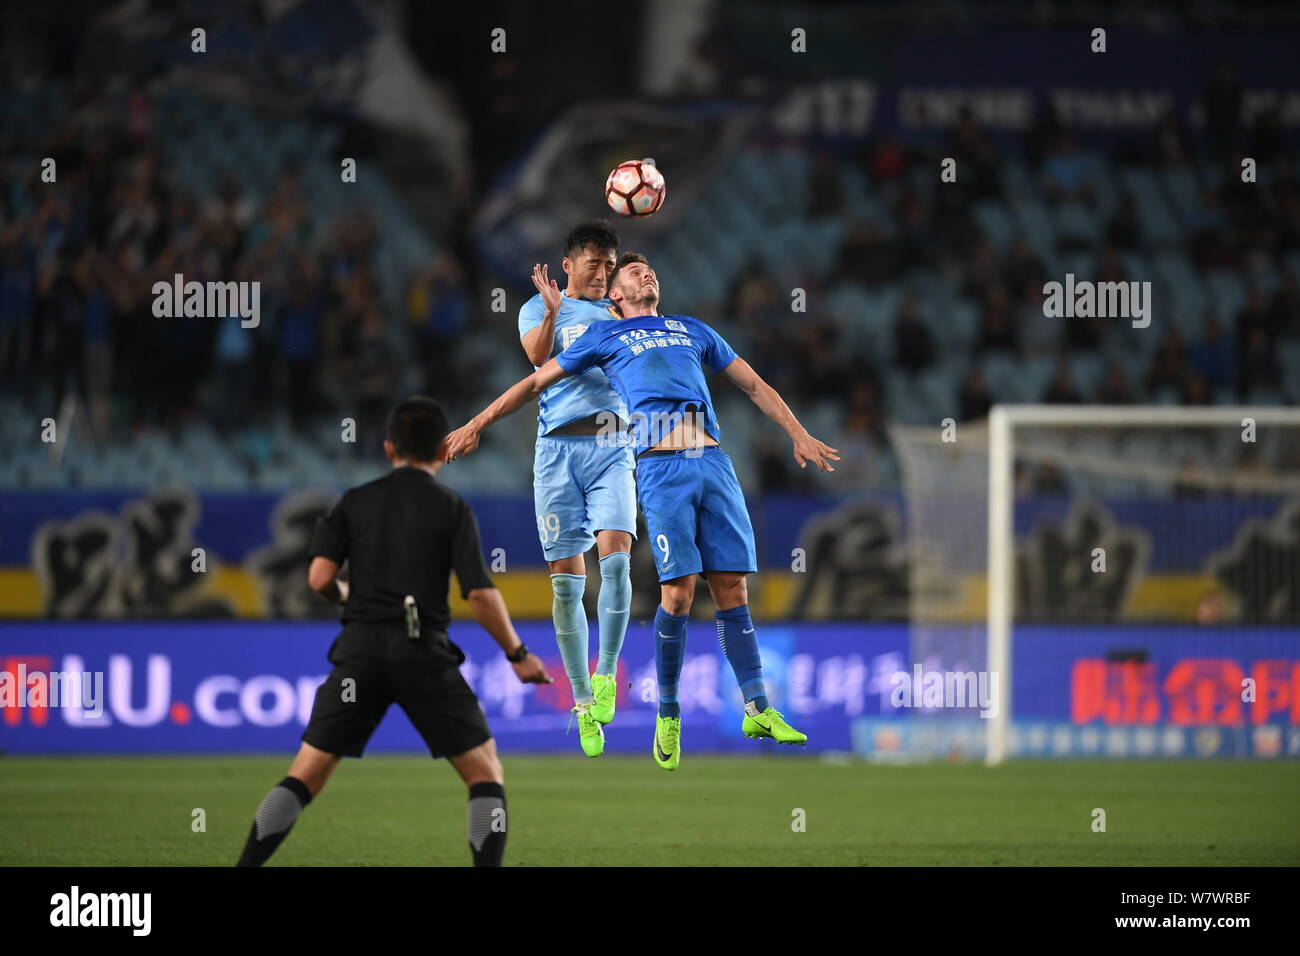 Joueur de football australien grec Apostolos Giannou Guangzhou R&F, avant, et le Yang de Jiangsu No.53 Suning, chef la balle dans leur sixième match dur Banque D'Images